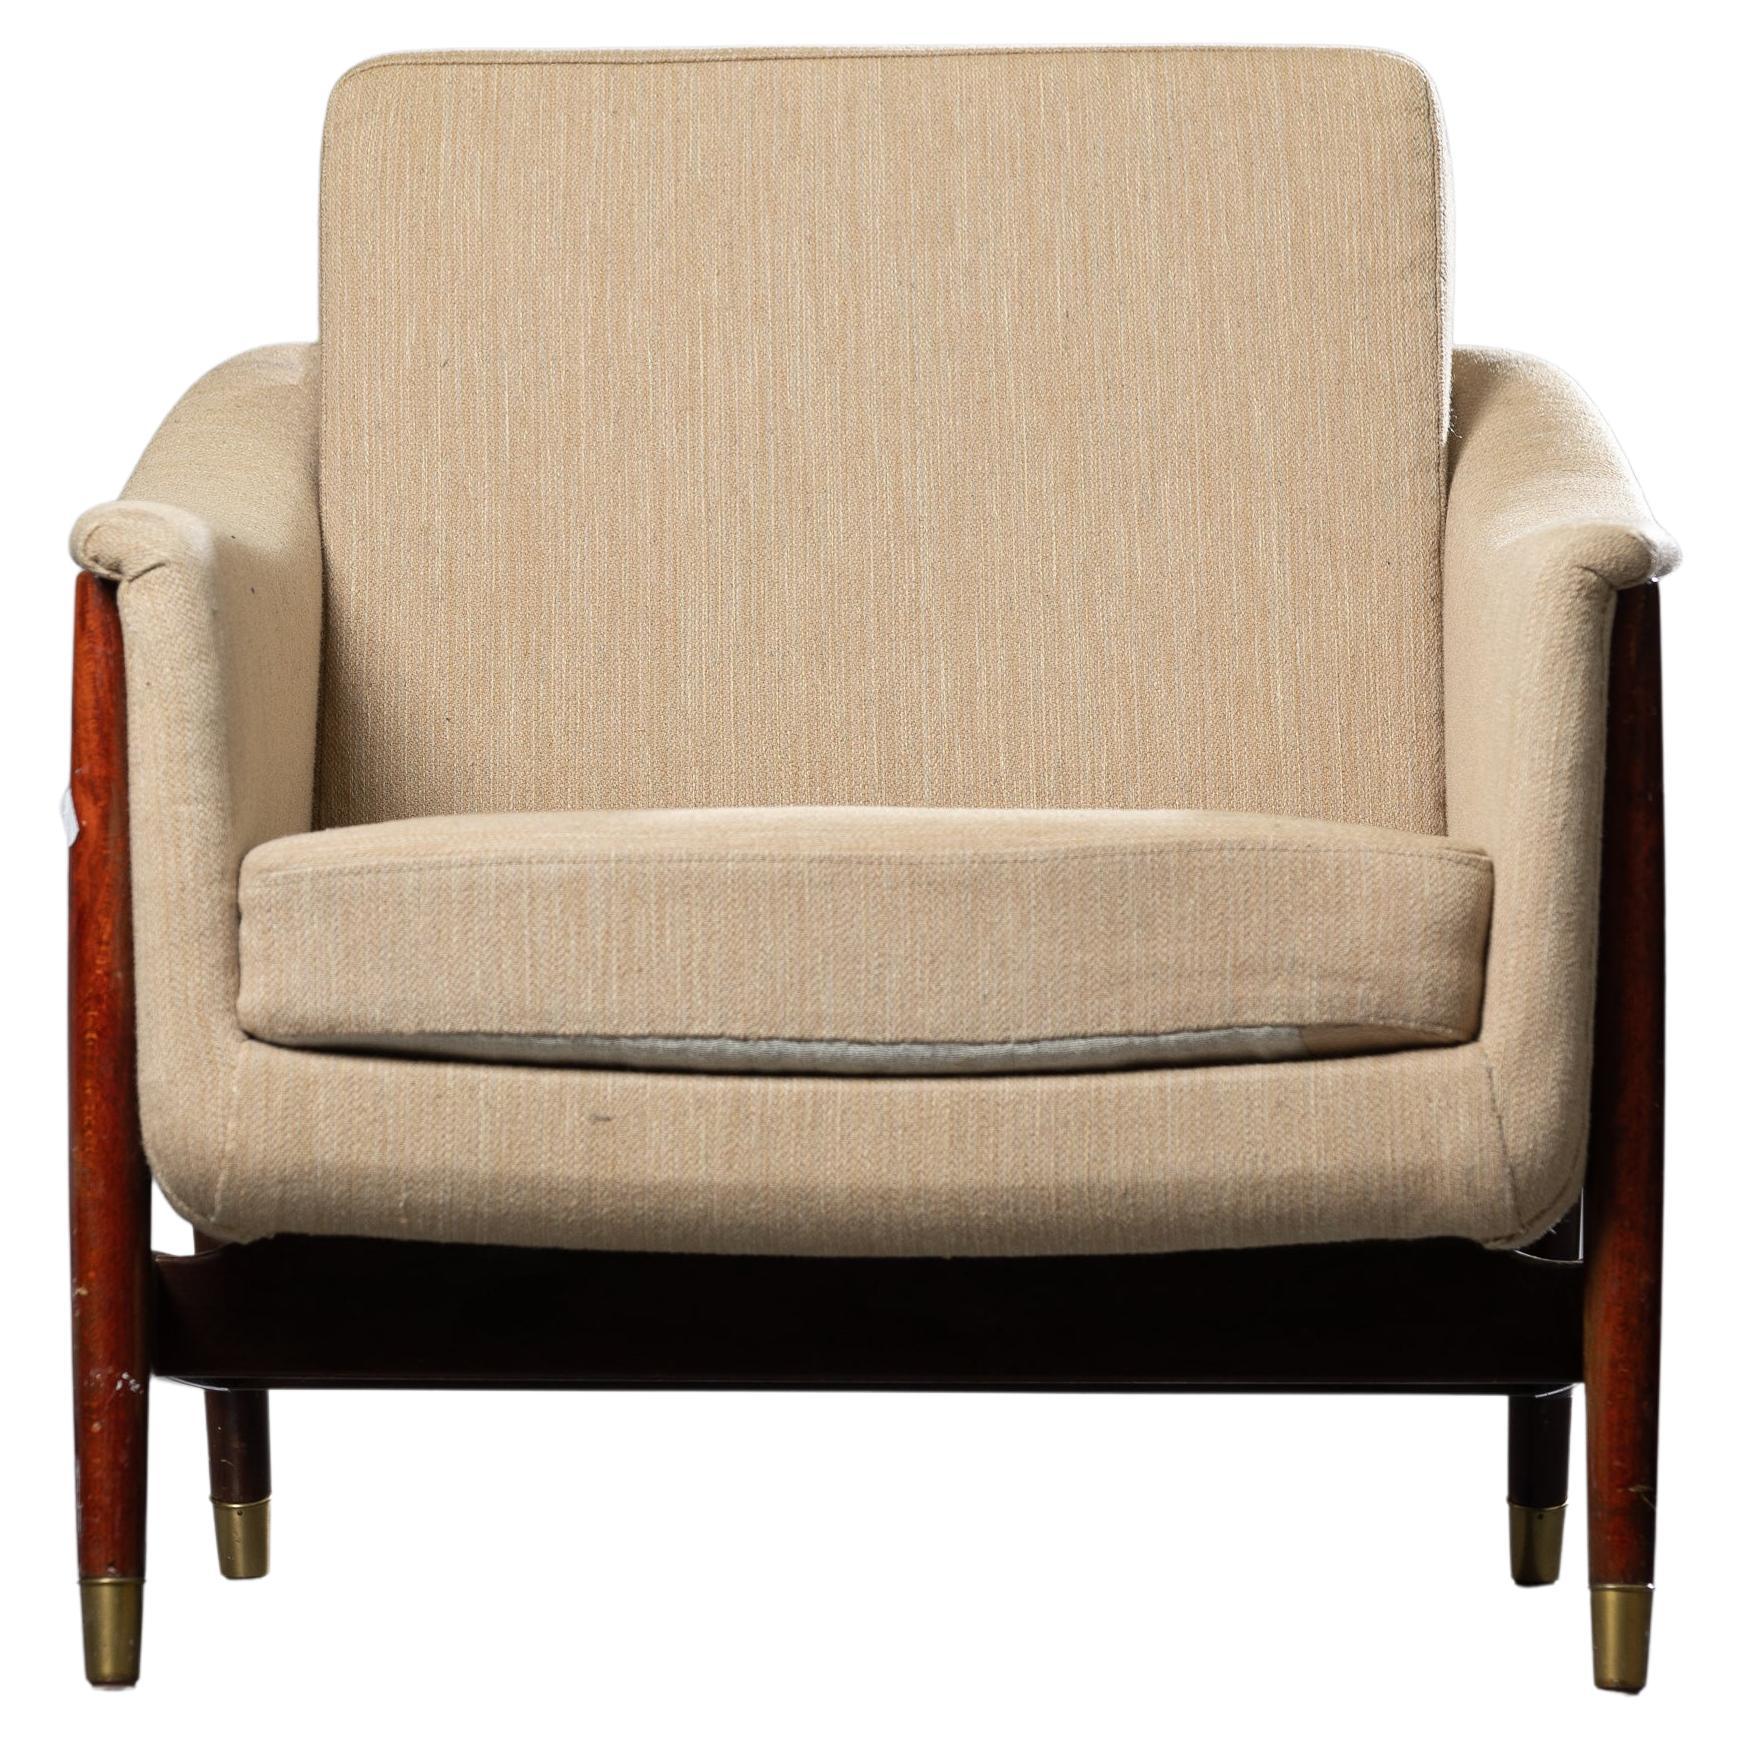 Skandinavischer Sessel der Moderne von Folke Ohlsson, hergestellt 1954 für Ljung Industrier